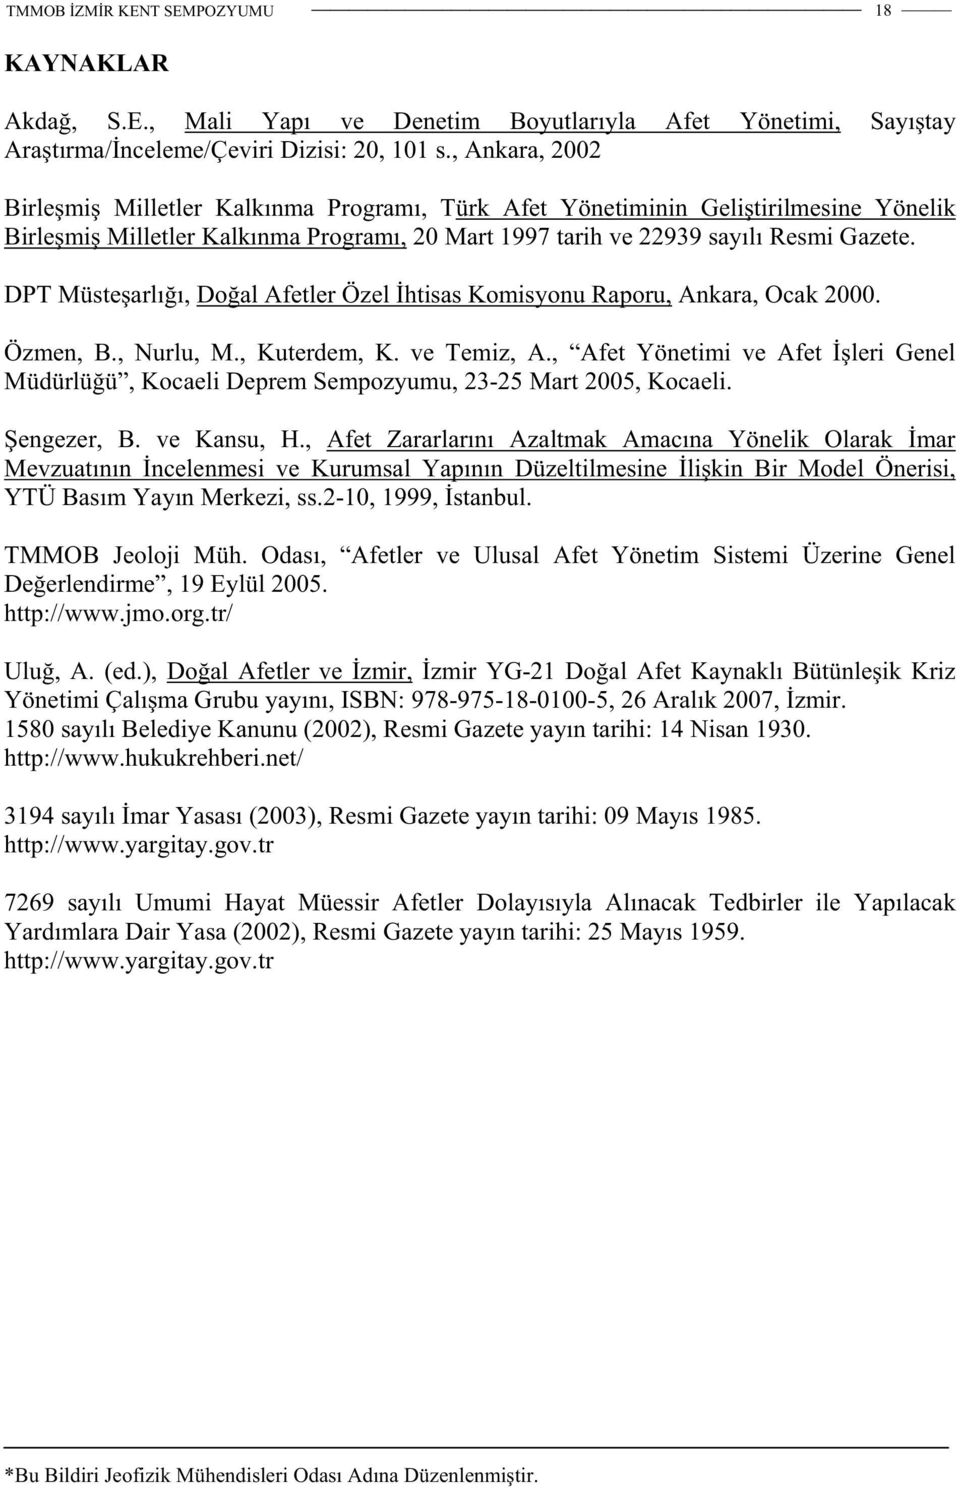 DPT Müstearlıı, Doal Afetler Özel htisas Komisyonu Raporu, Ankara, Ocak 2000. Özmen, B., Nurlu, M., Kuterdem, K. ve Temiz, A.